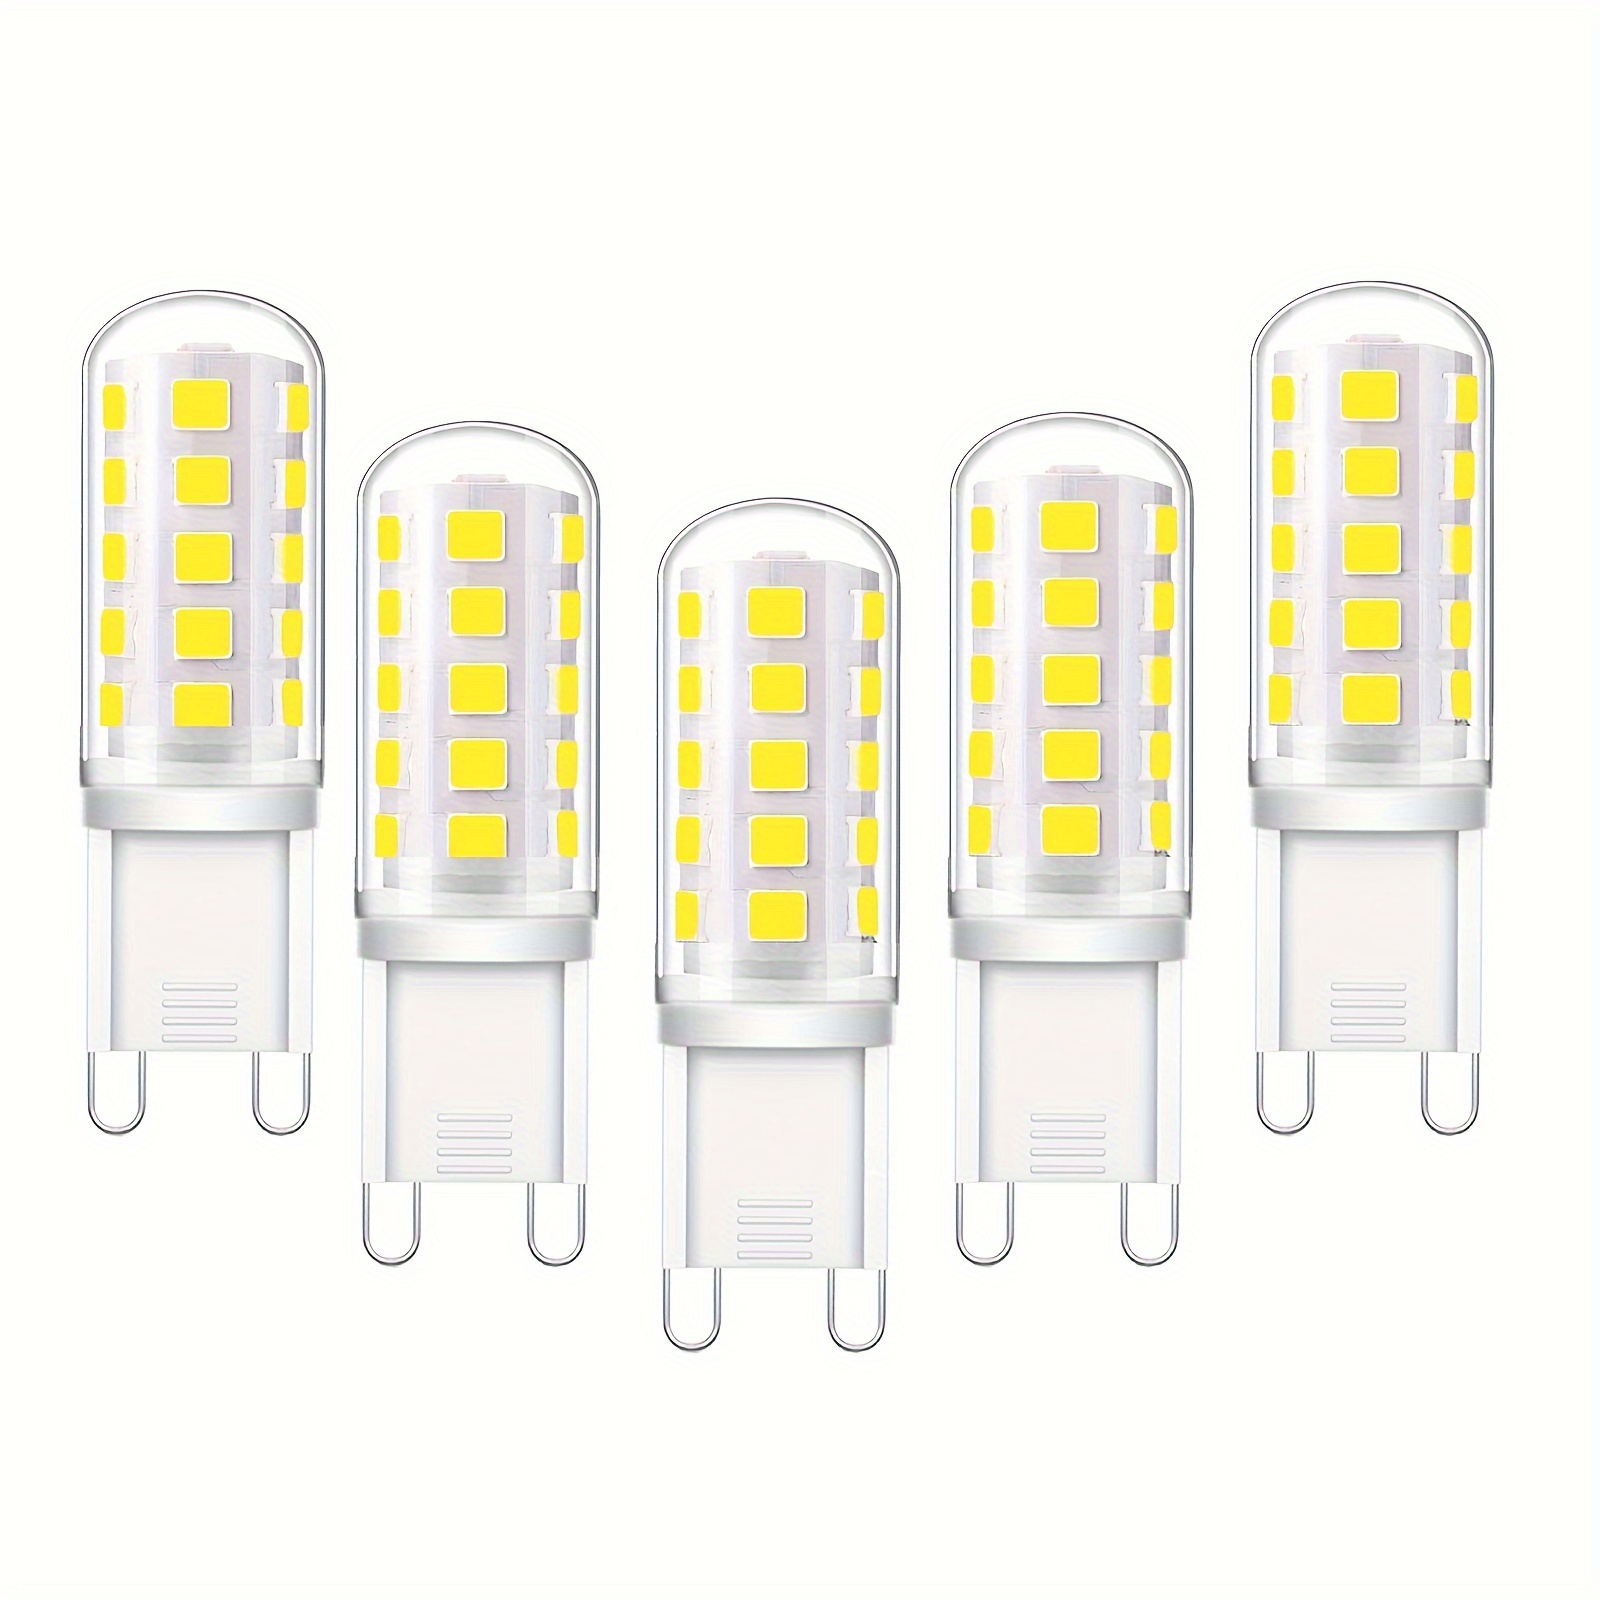 Euxper Ampoule LED G9 3W Blanc Naturel 4000K, Ampoules LED G9 420LM,  Équivalent à une Ampoule Halogène 28W 40W, Ampoules LED G9 Maïs pour Lampe  de Bureau, Anti-Flicker, AC 220-240V, Paquet de